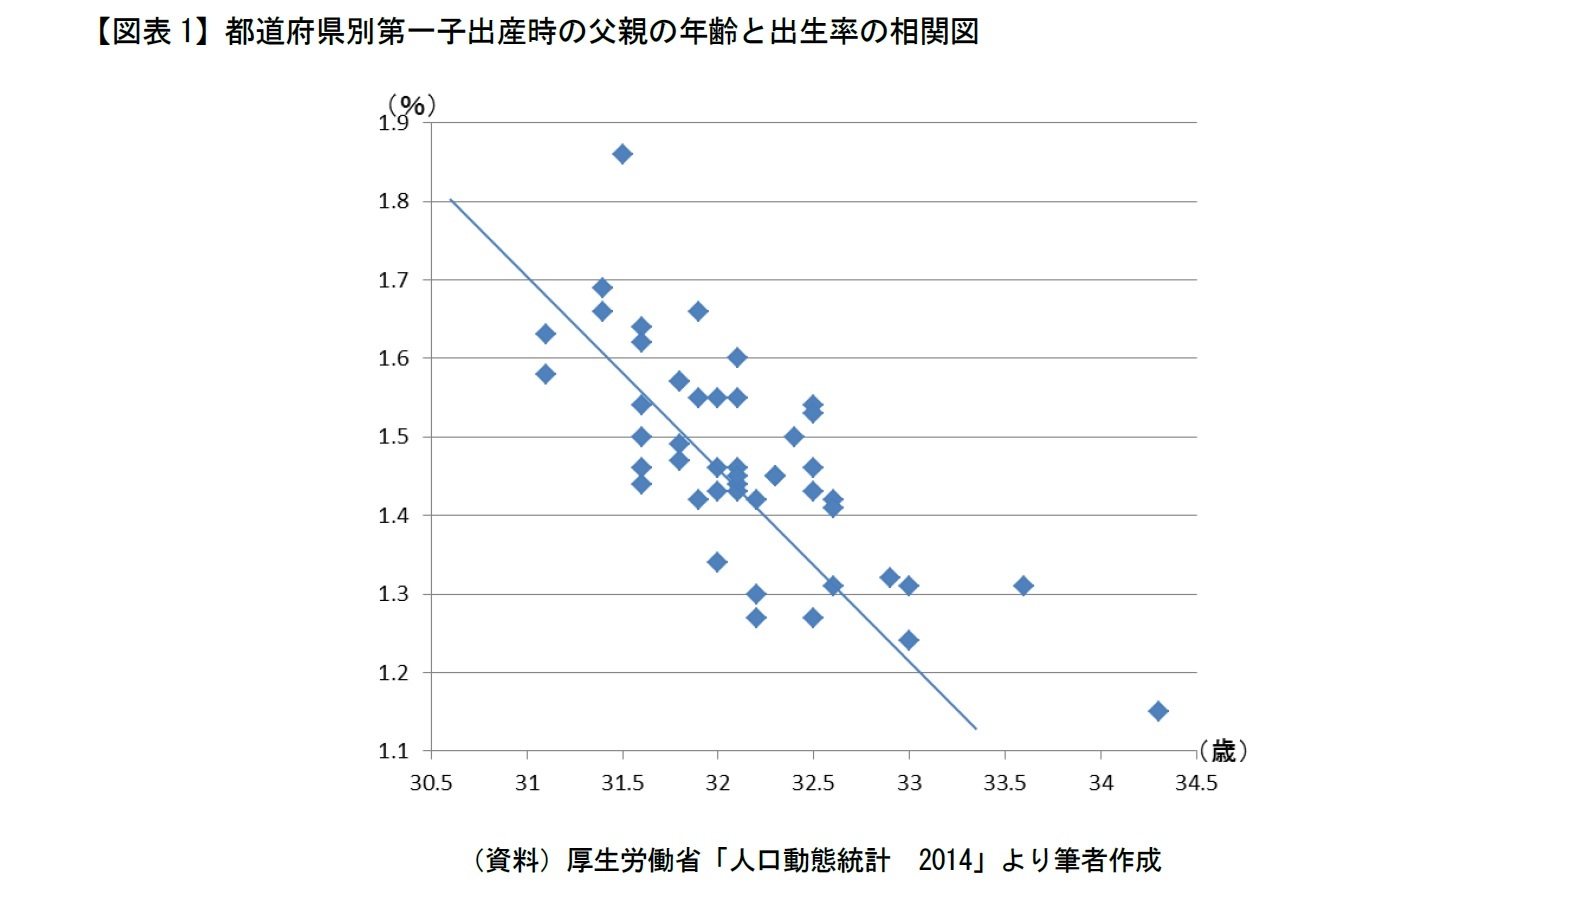 【図表1】都道府県別第一子出産時の父親の年齢と出生率の相関図